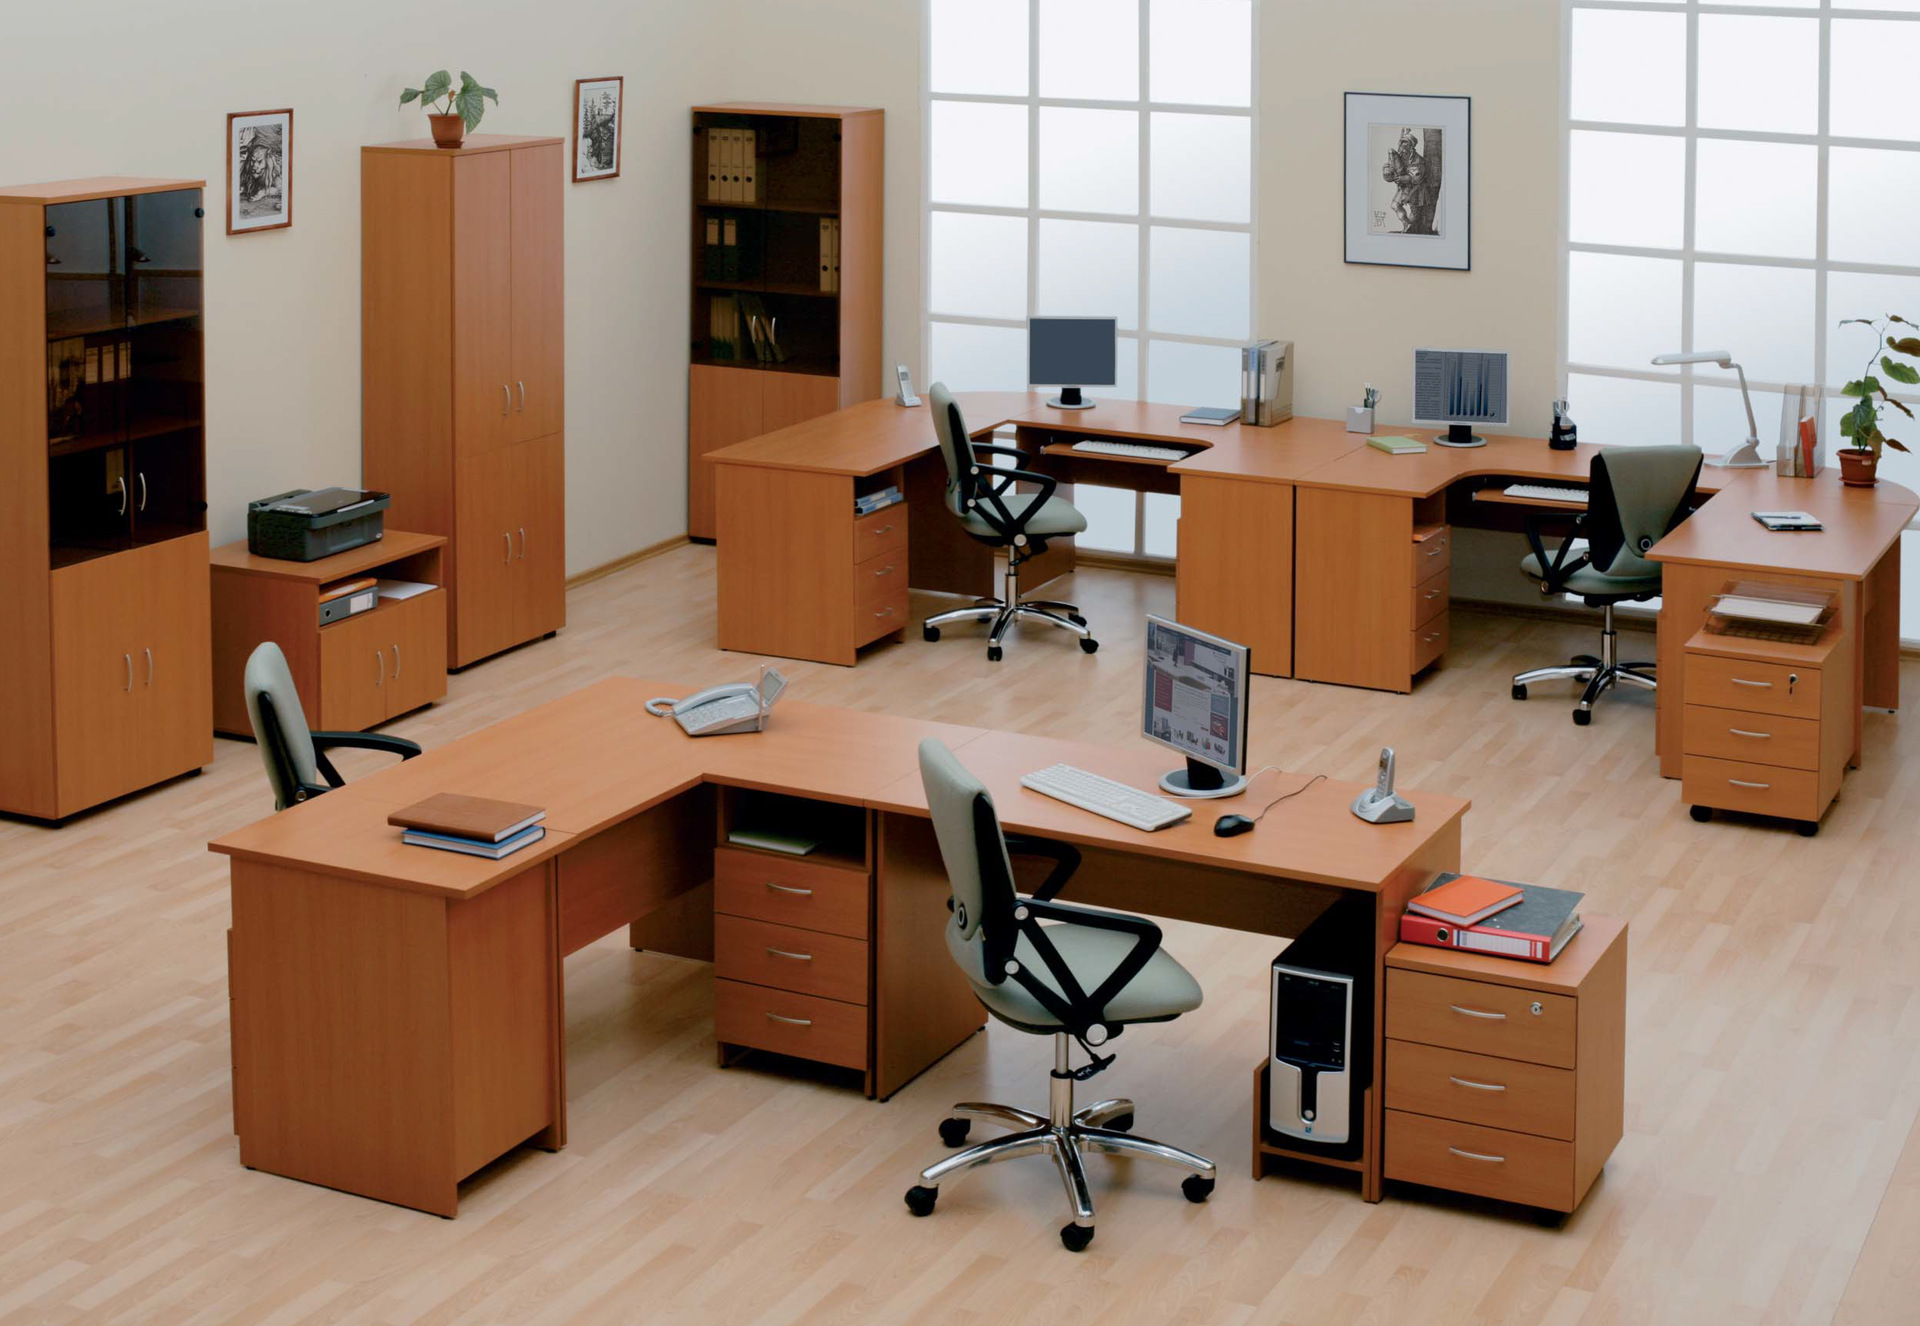 Офис 3 10. Альтерна — мебельная фабрика. Офисная мебель. Расстановка мебели в офисе. Расположение мебели в офисе.